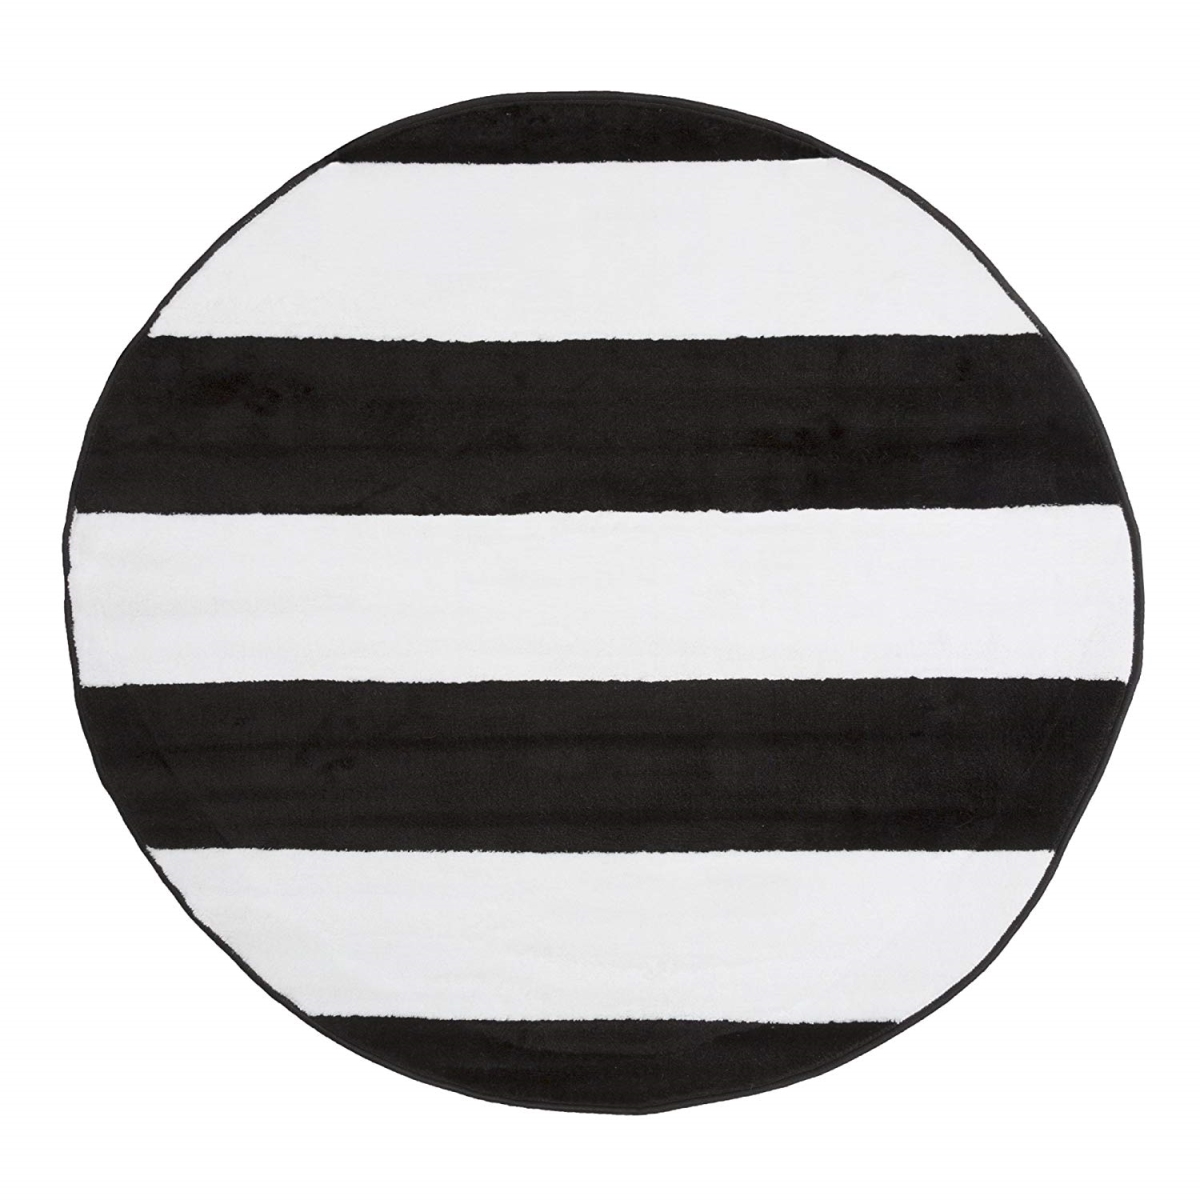 62a-01015 5 Ft. Round Breton Stripe Area Rug, Black & White